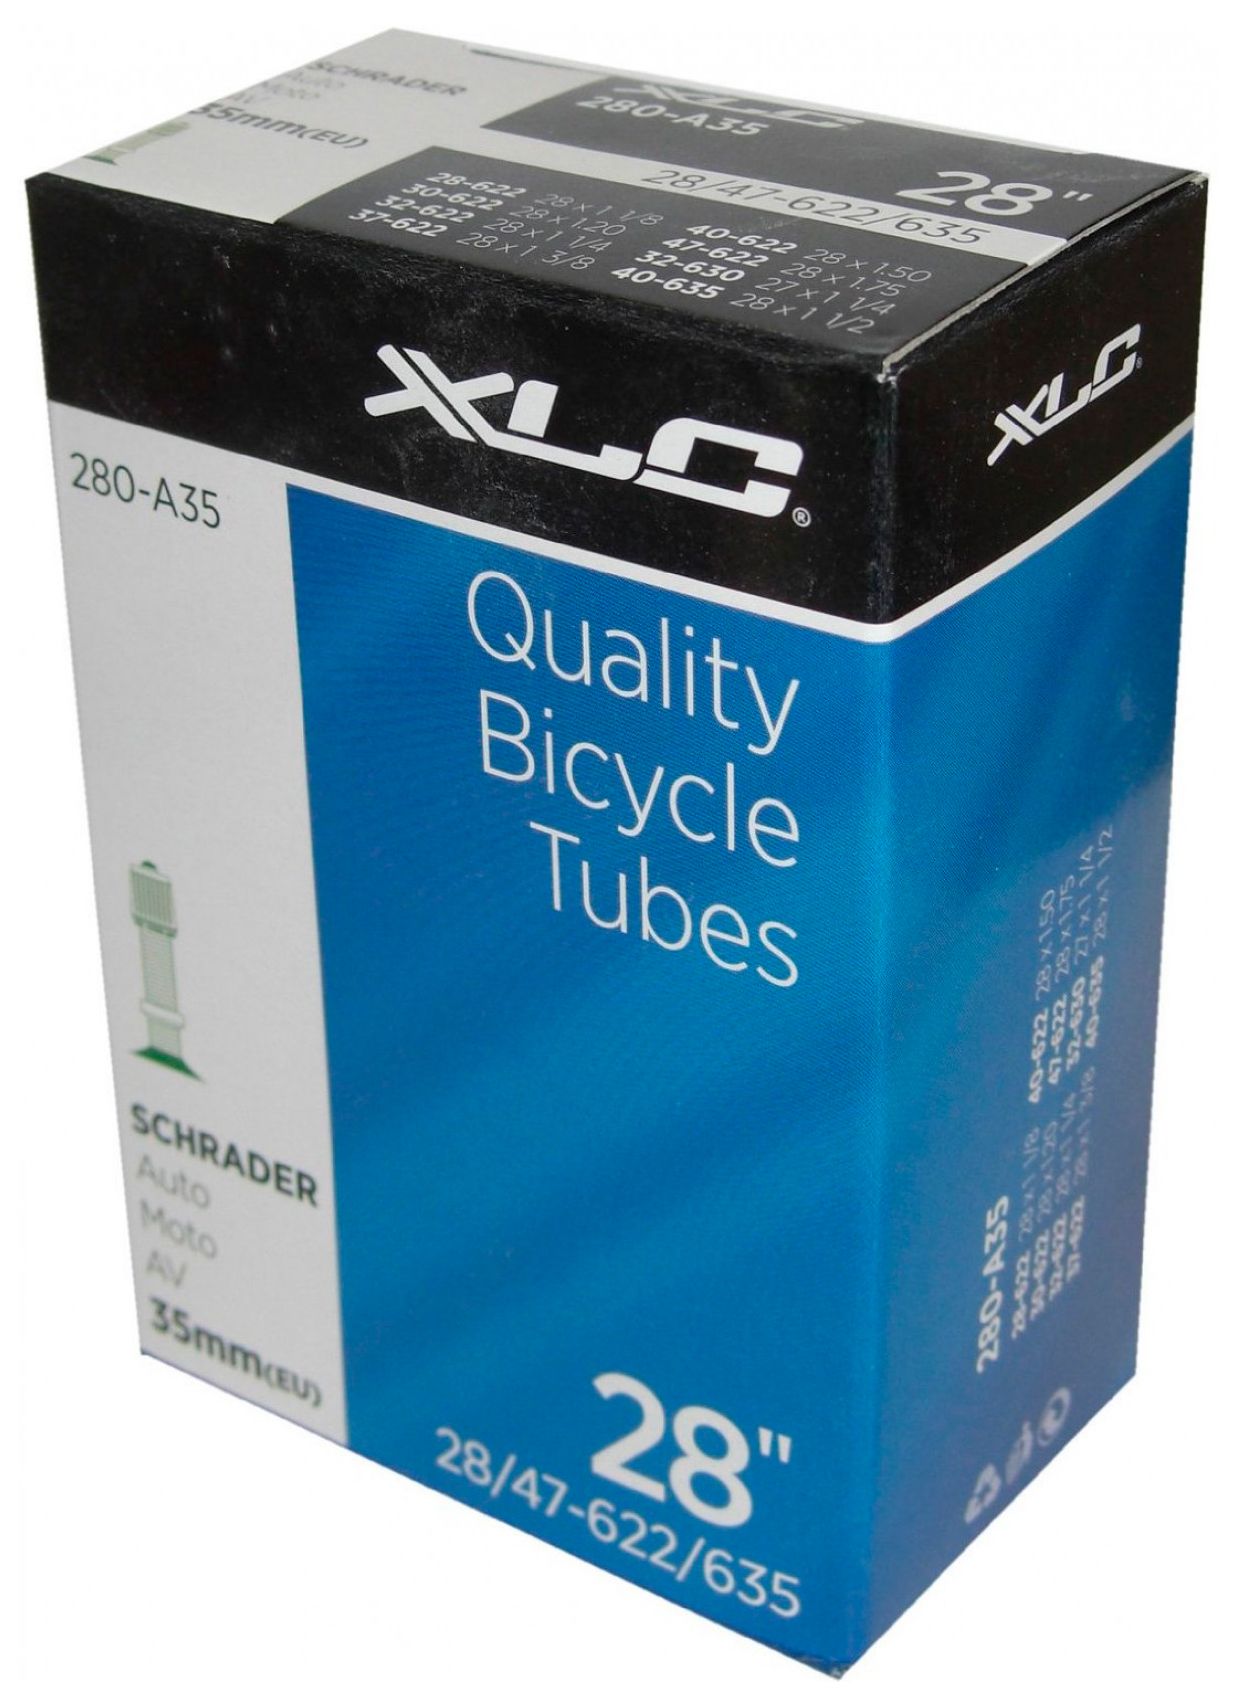  Камера для велосипеда XLC Bicycle tubes 28_1 1/8*1,75 AV 35 мм